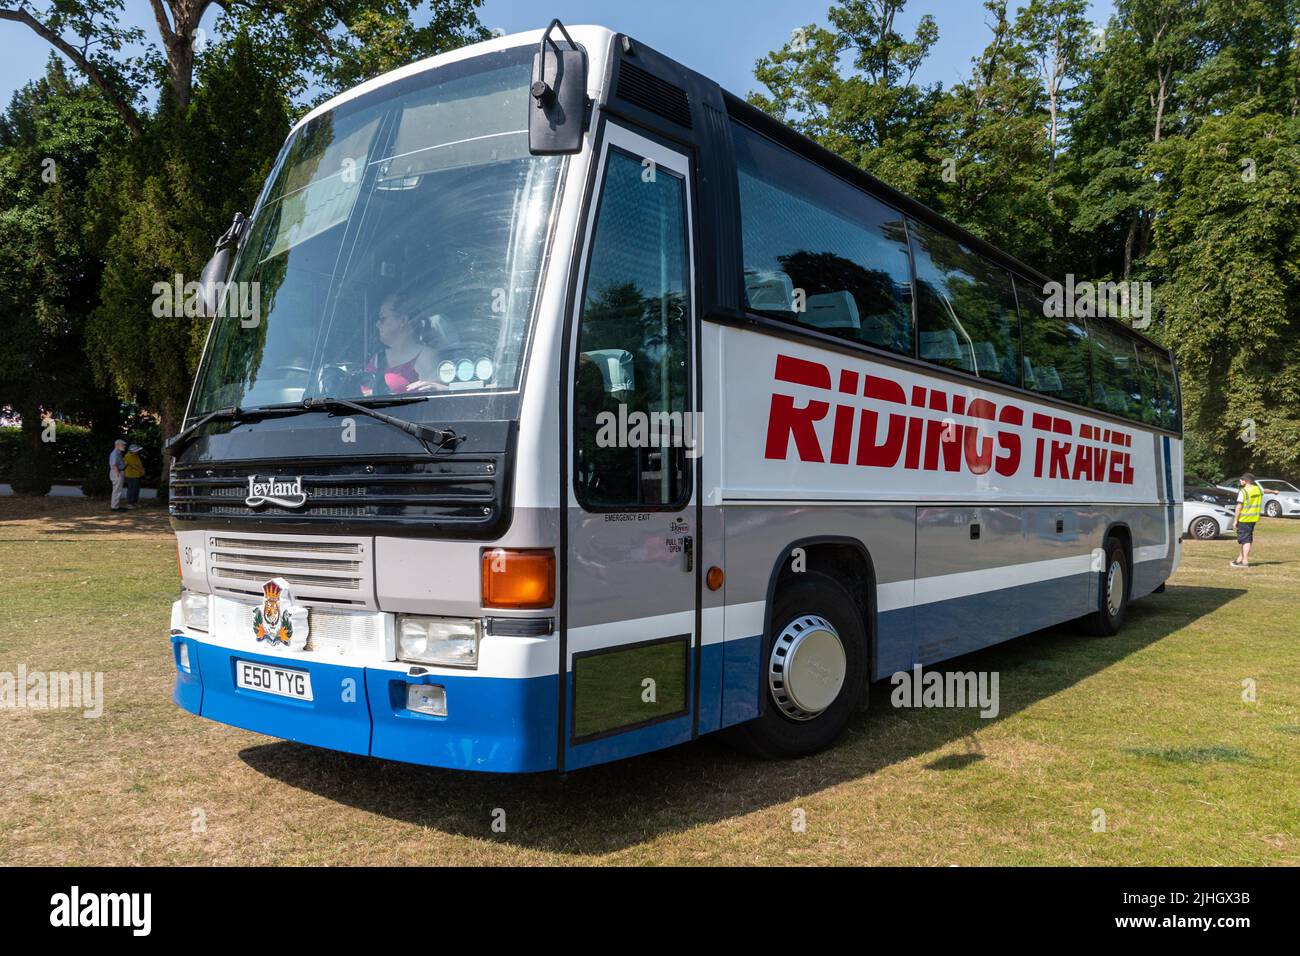 Ridings Travel Coach, un autobus Leyland prodotto nel 1988 Foto Stock